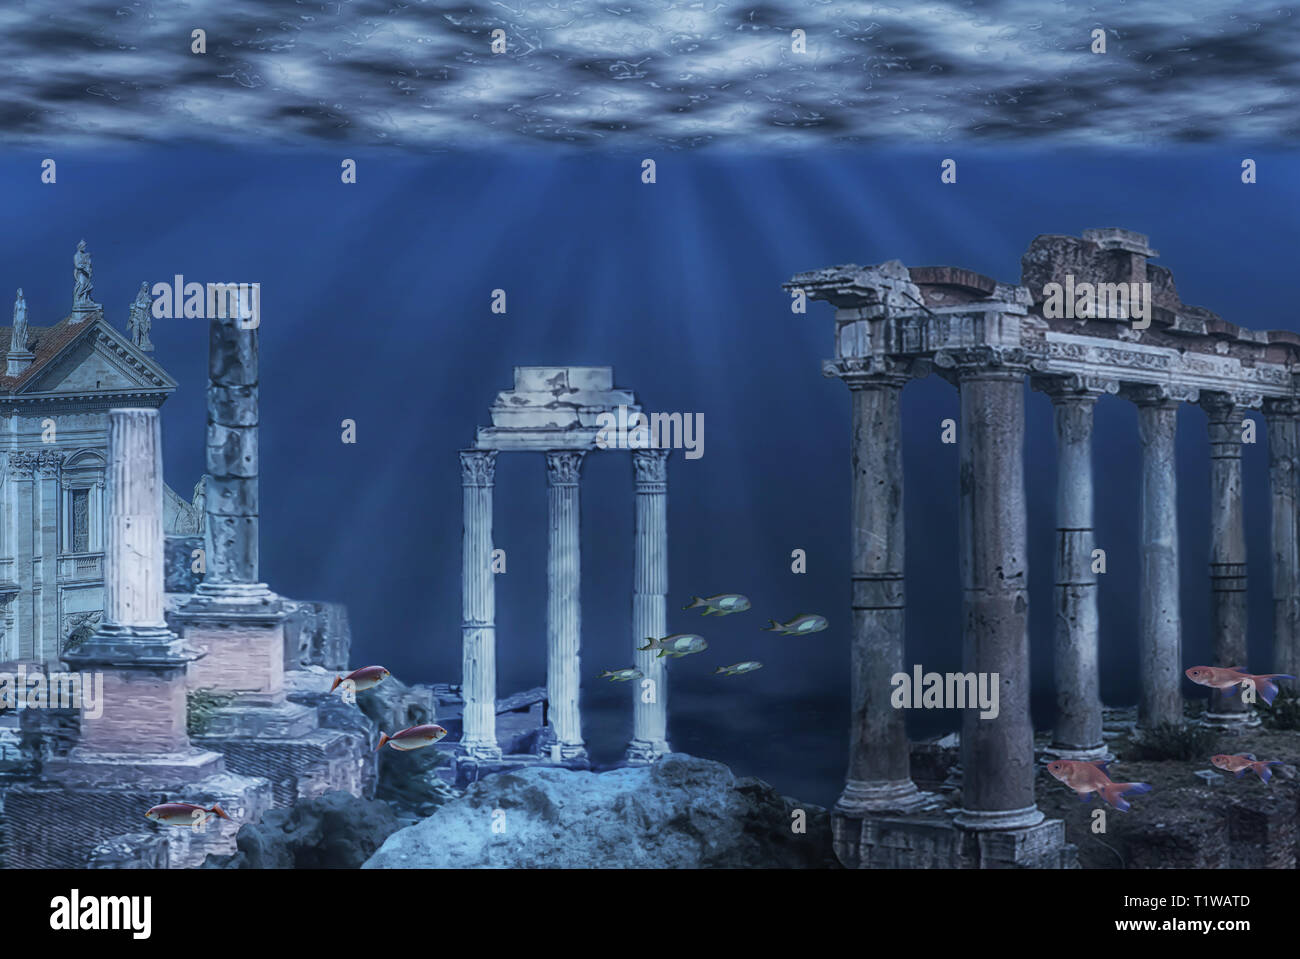 Illustration des ruines de la civilisation de l'Atlantide. Ruines sous-marines Banque D'Images